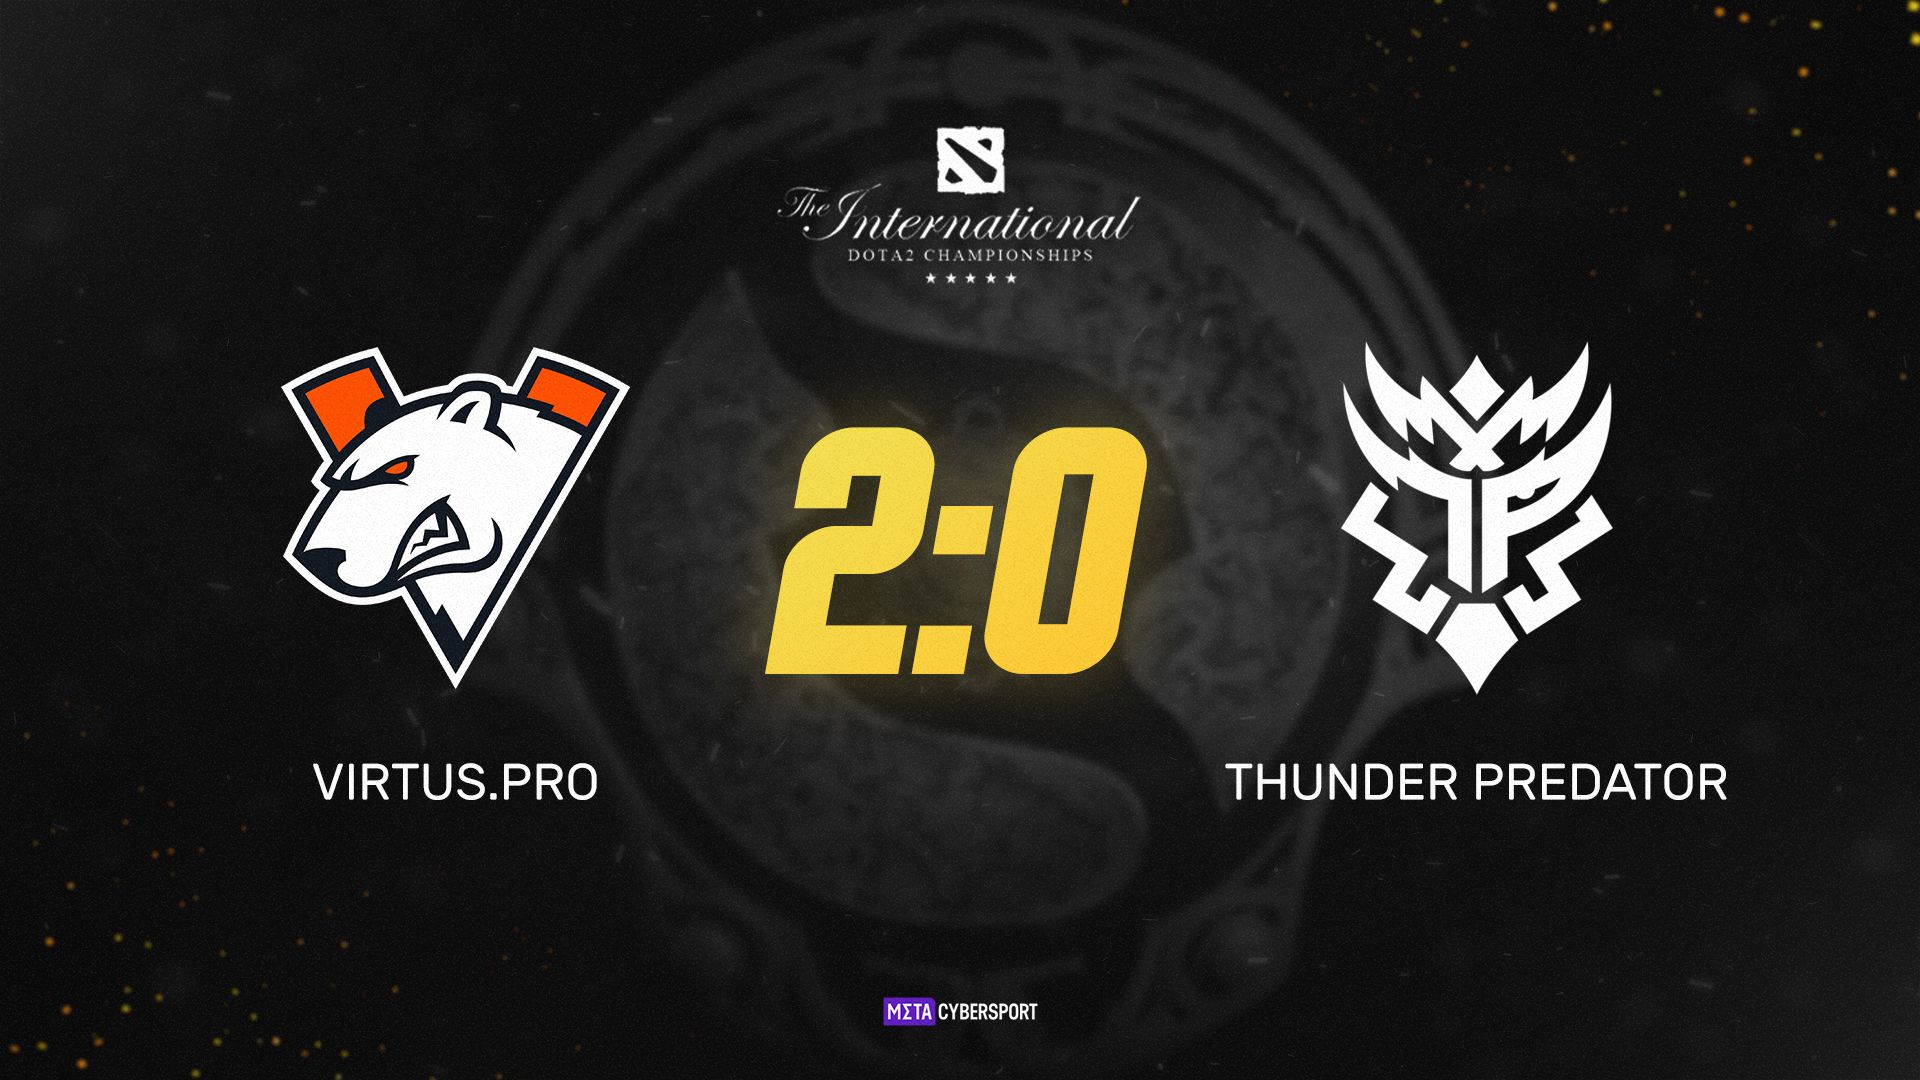 Virtus.pro зарабатывает важнейшую победу против Thunder Predator